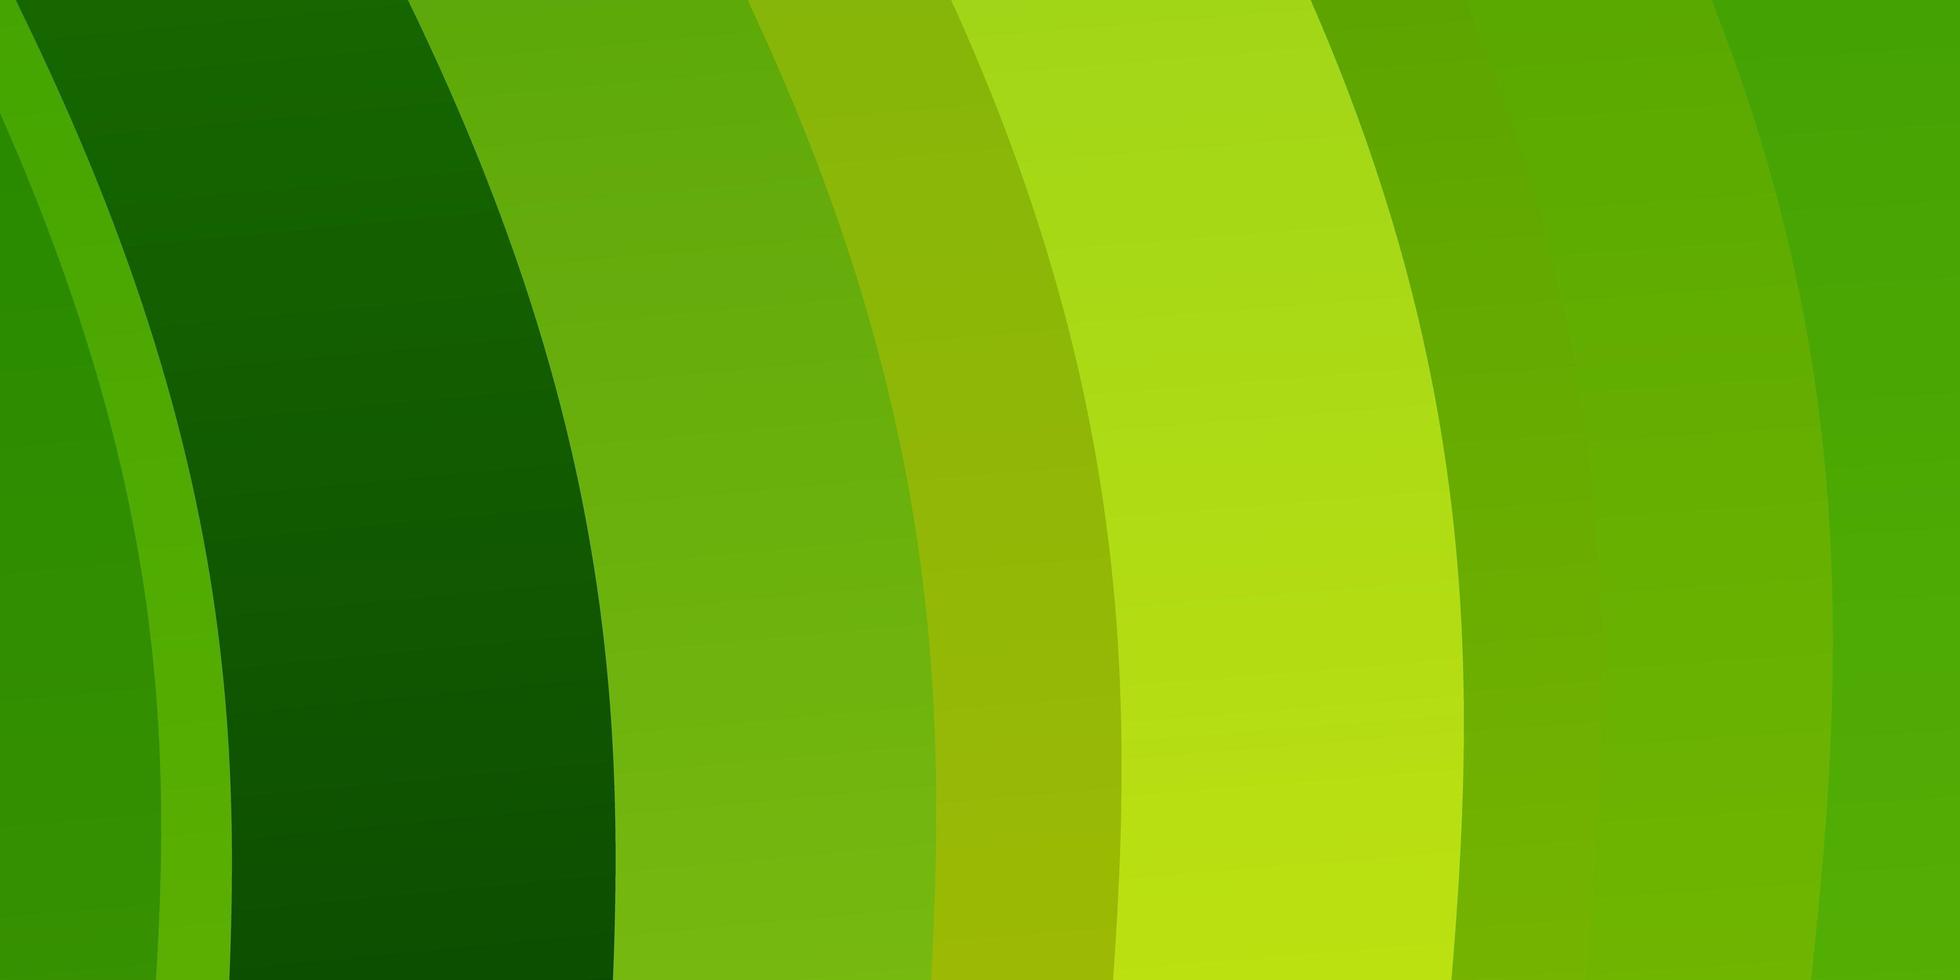 ljusgrön, gul vektormall med linjer. vektor